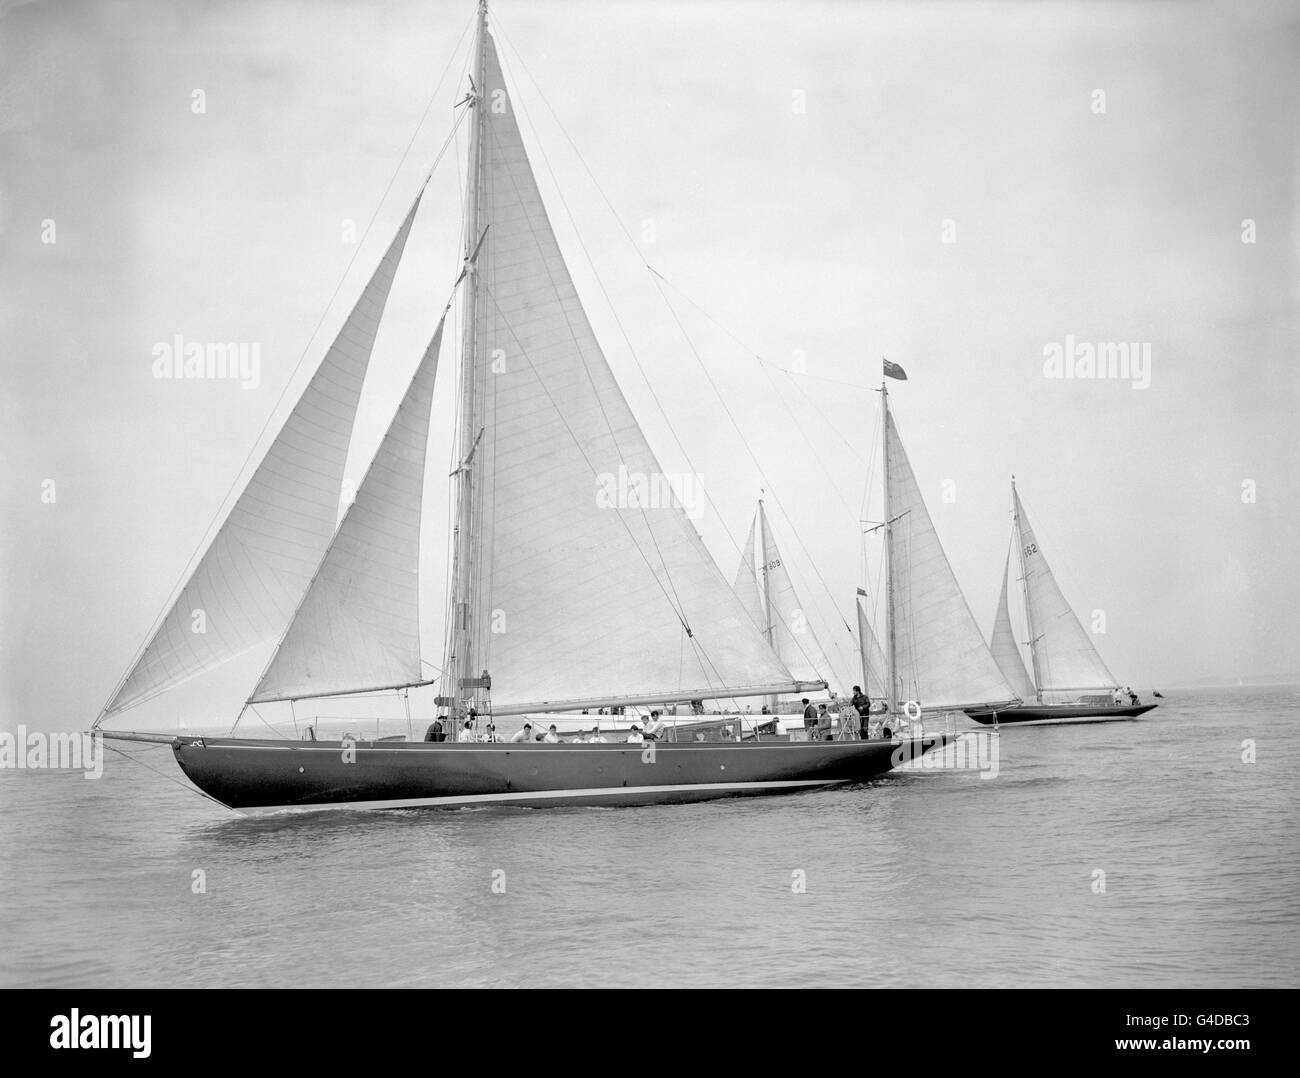 La voile transatlantique - Tall Ships' Race - Plymouth Banque D'Images